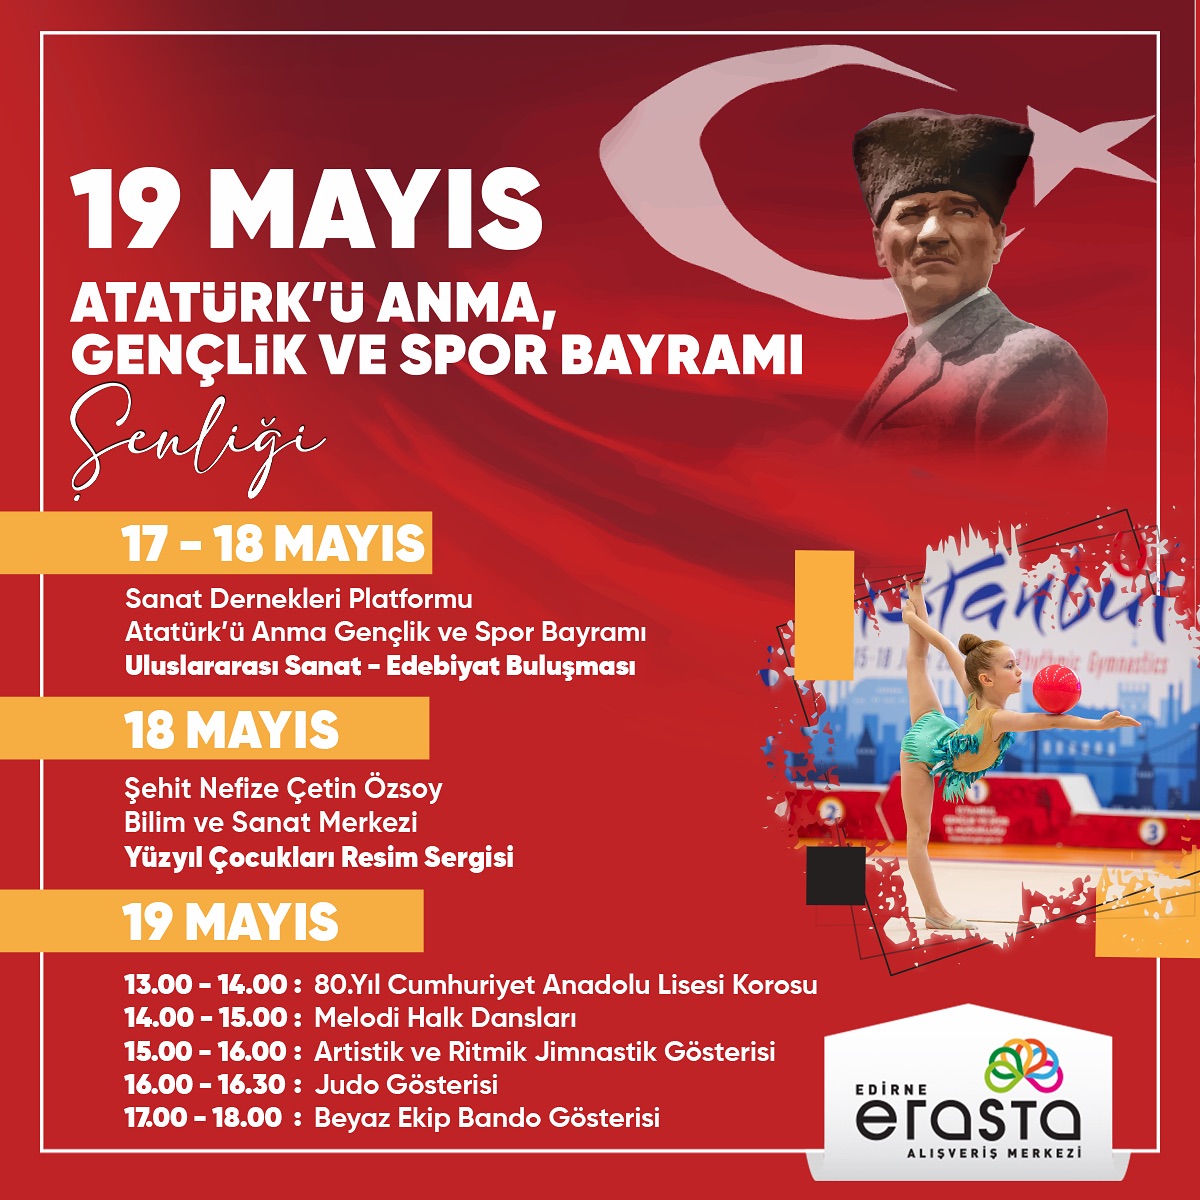 19 Mayıs Atatürk’ü Anma, Gençlik ve Spor Bayram